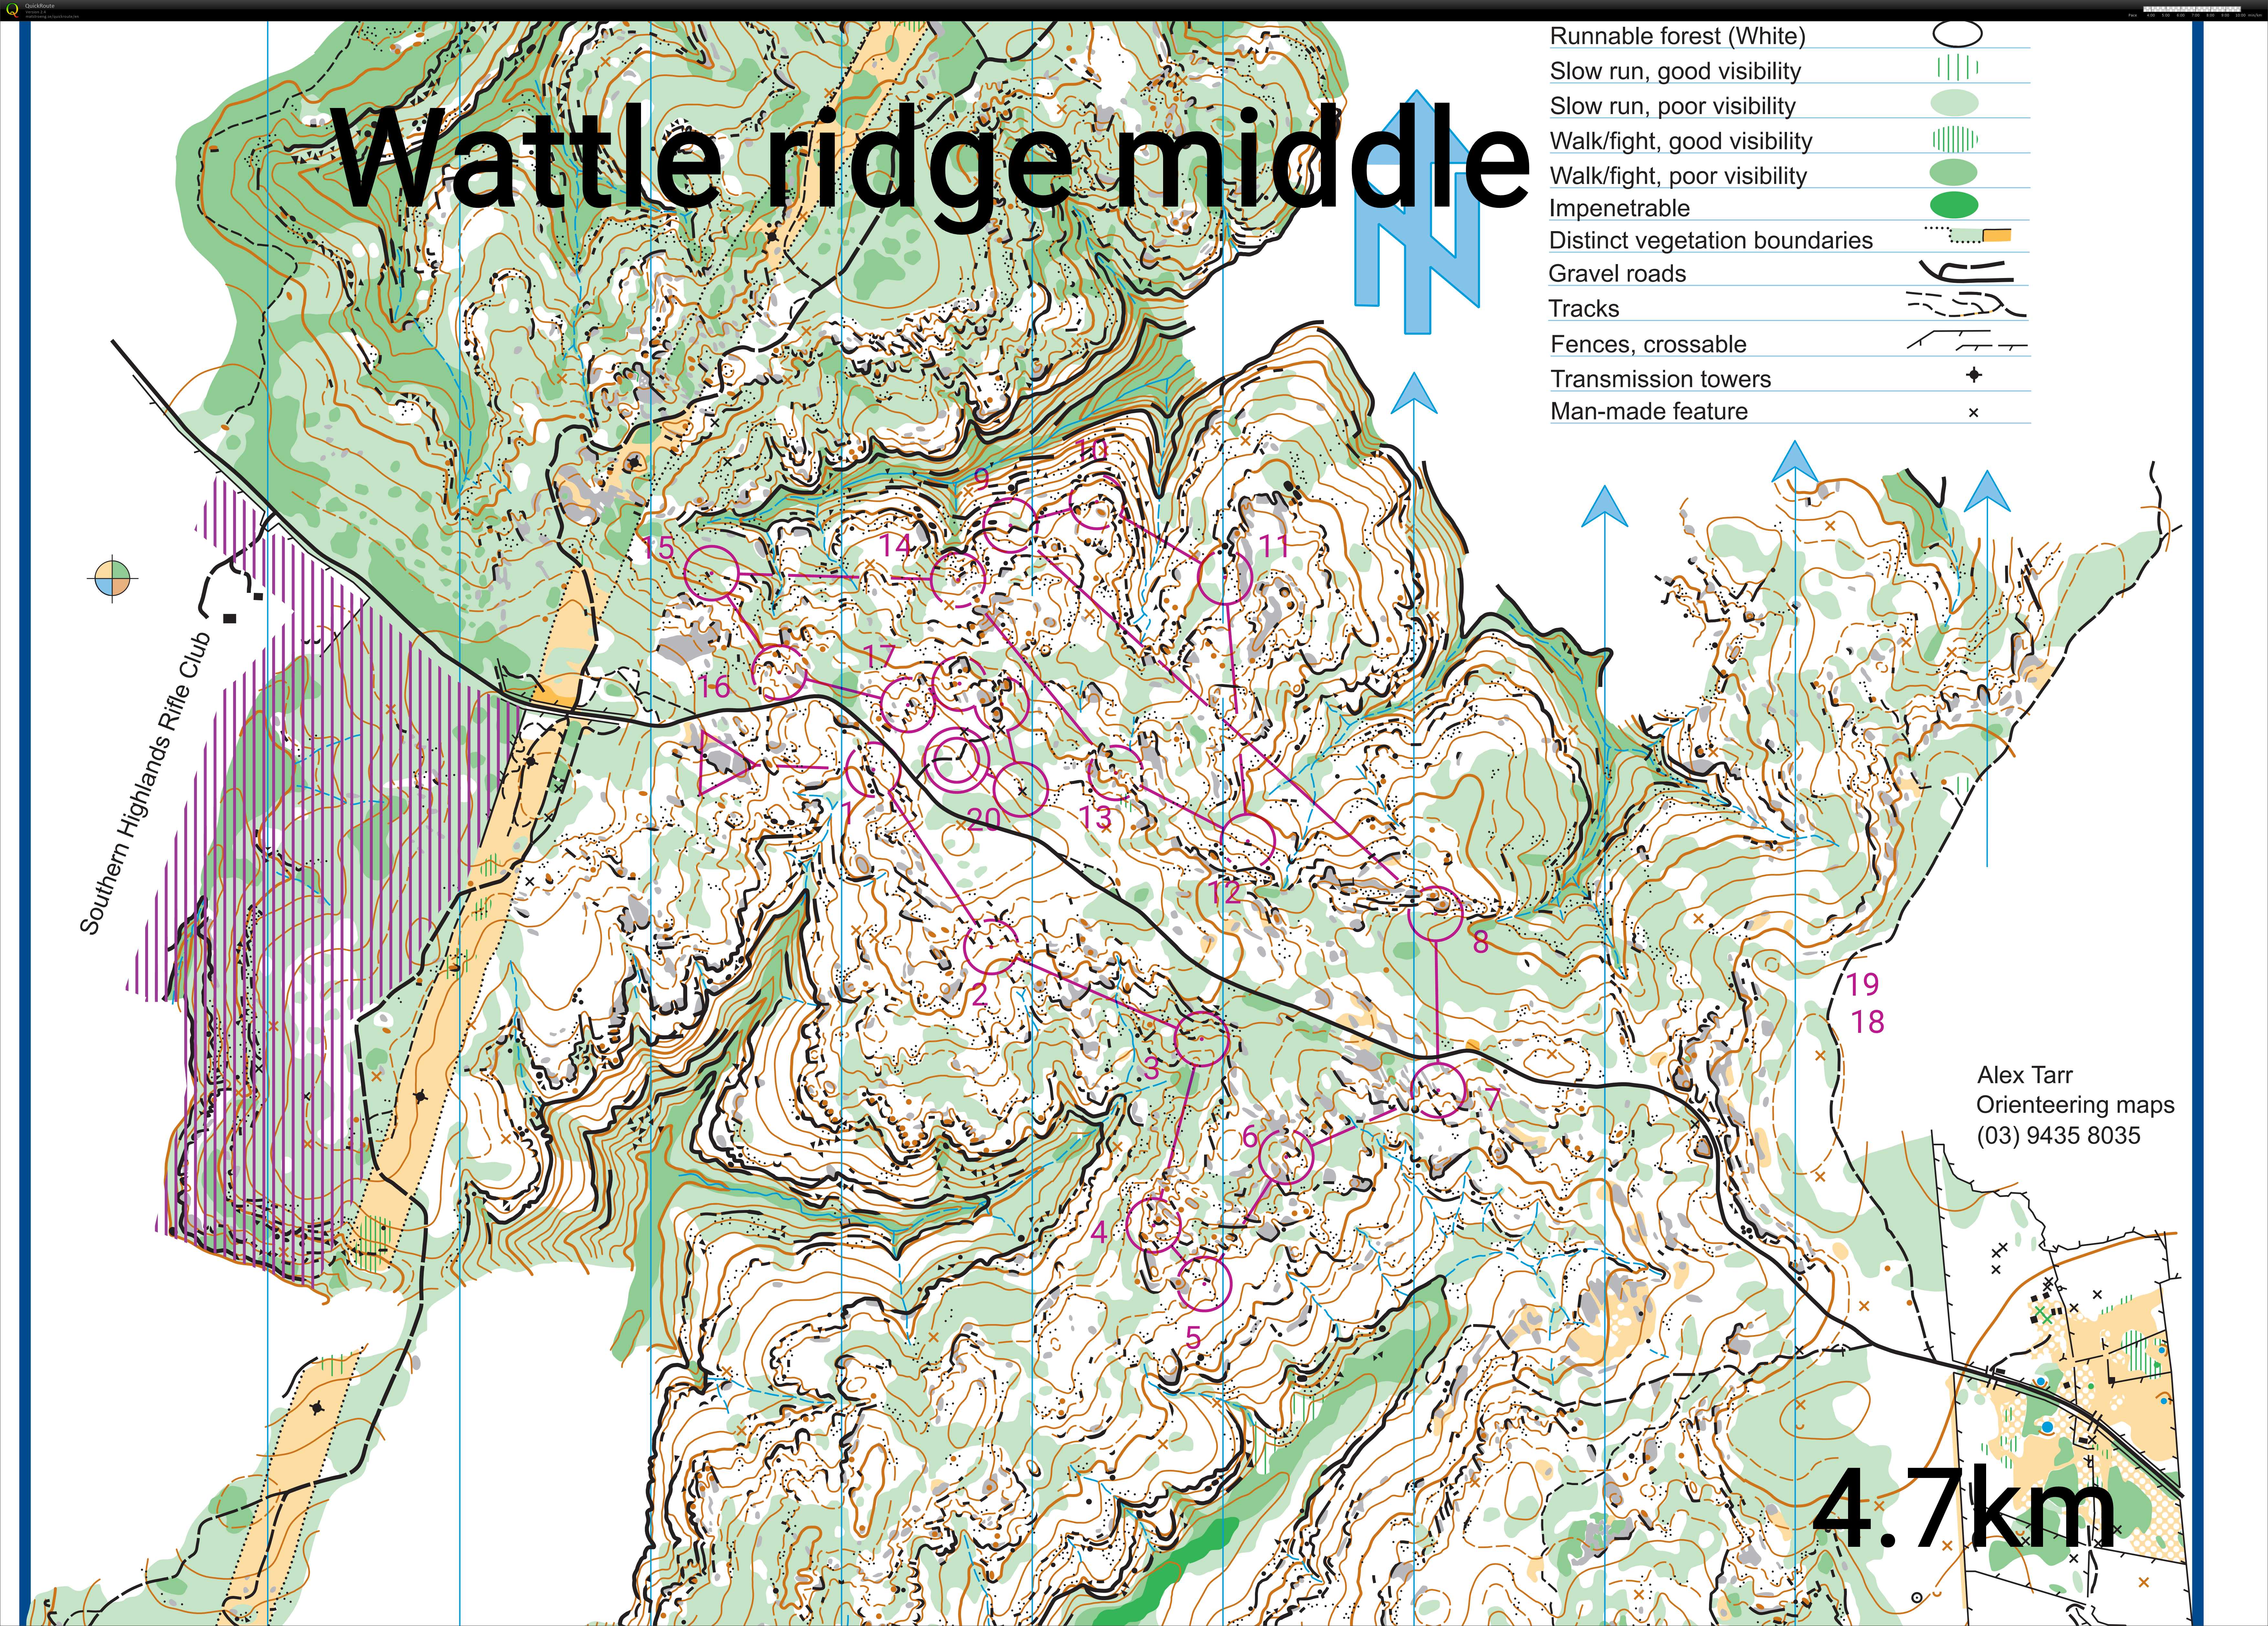 Wattle ridge middle sim (06/07/2020)